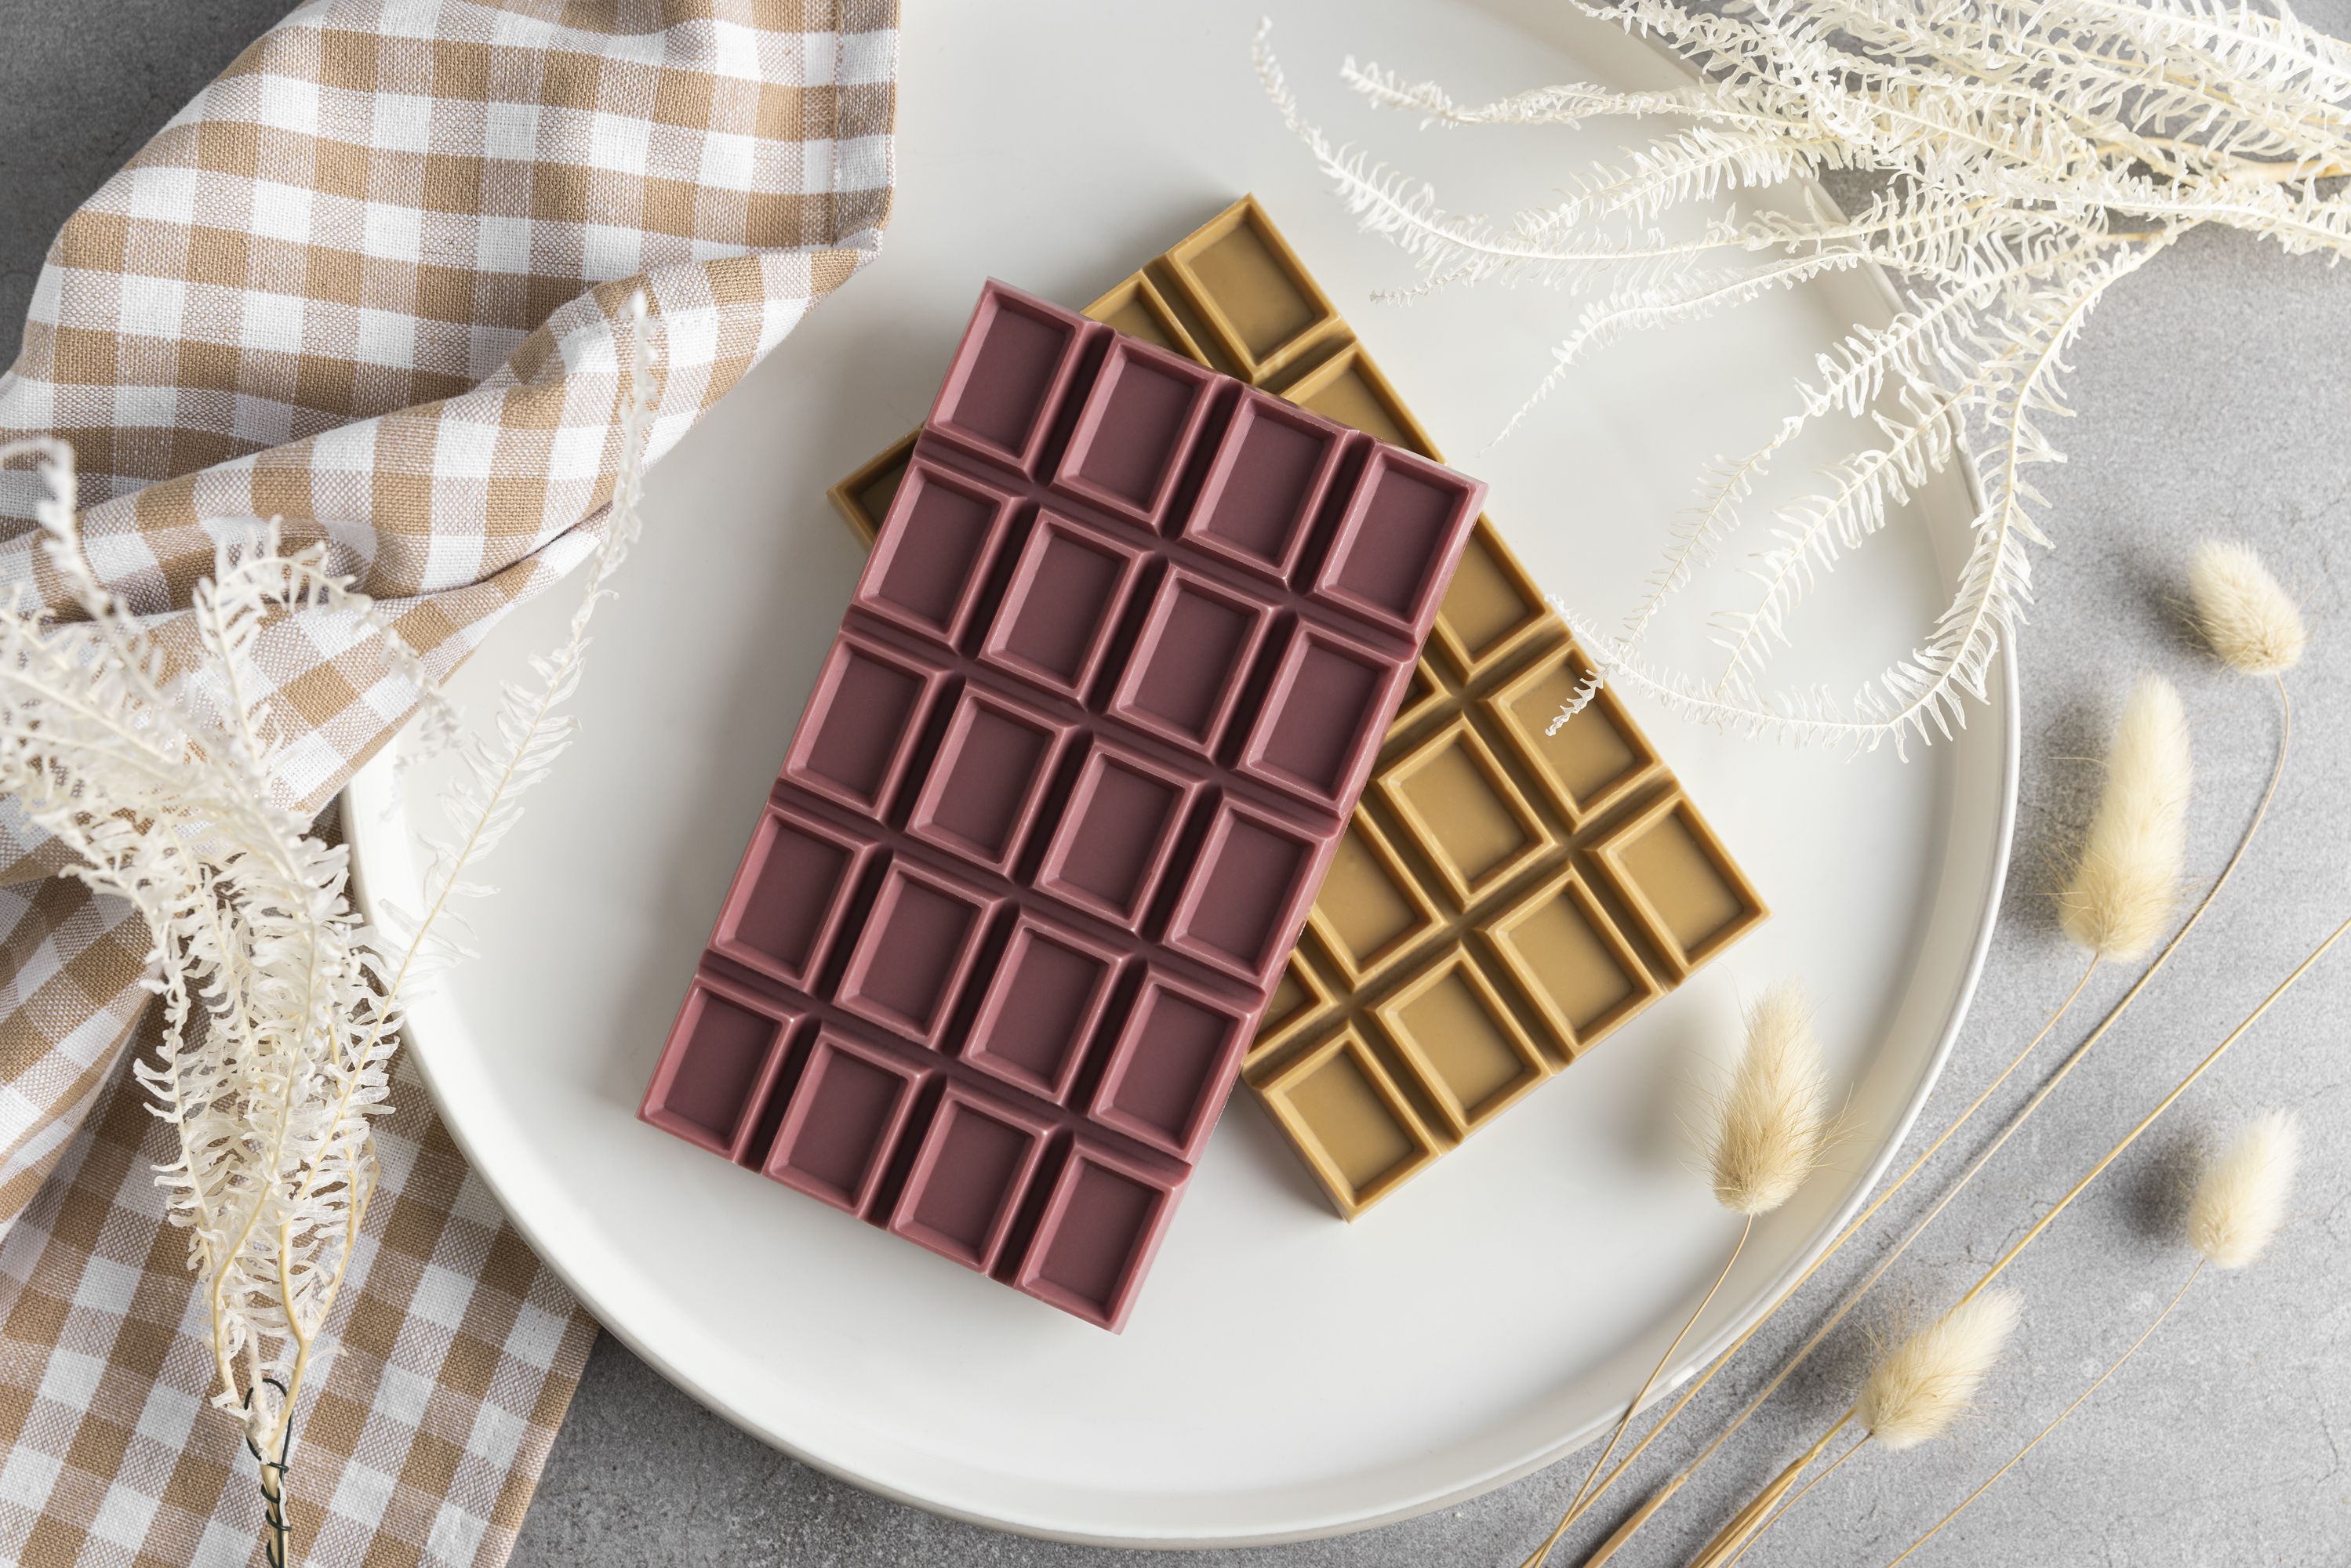 Zwei Waffel-Schokoladen liegen auf einem Teller